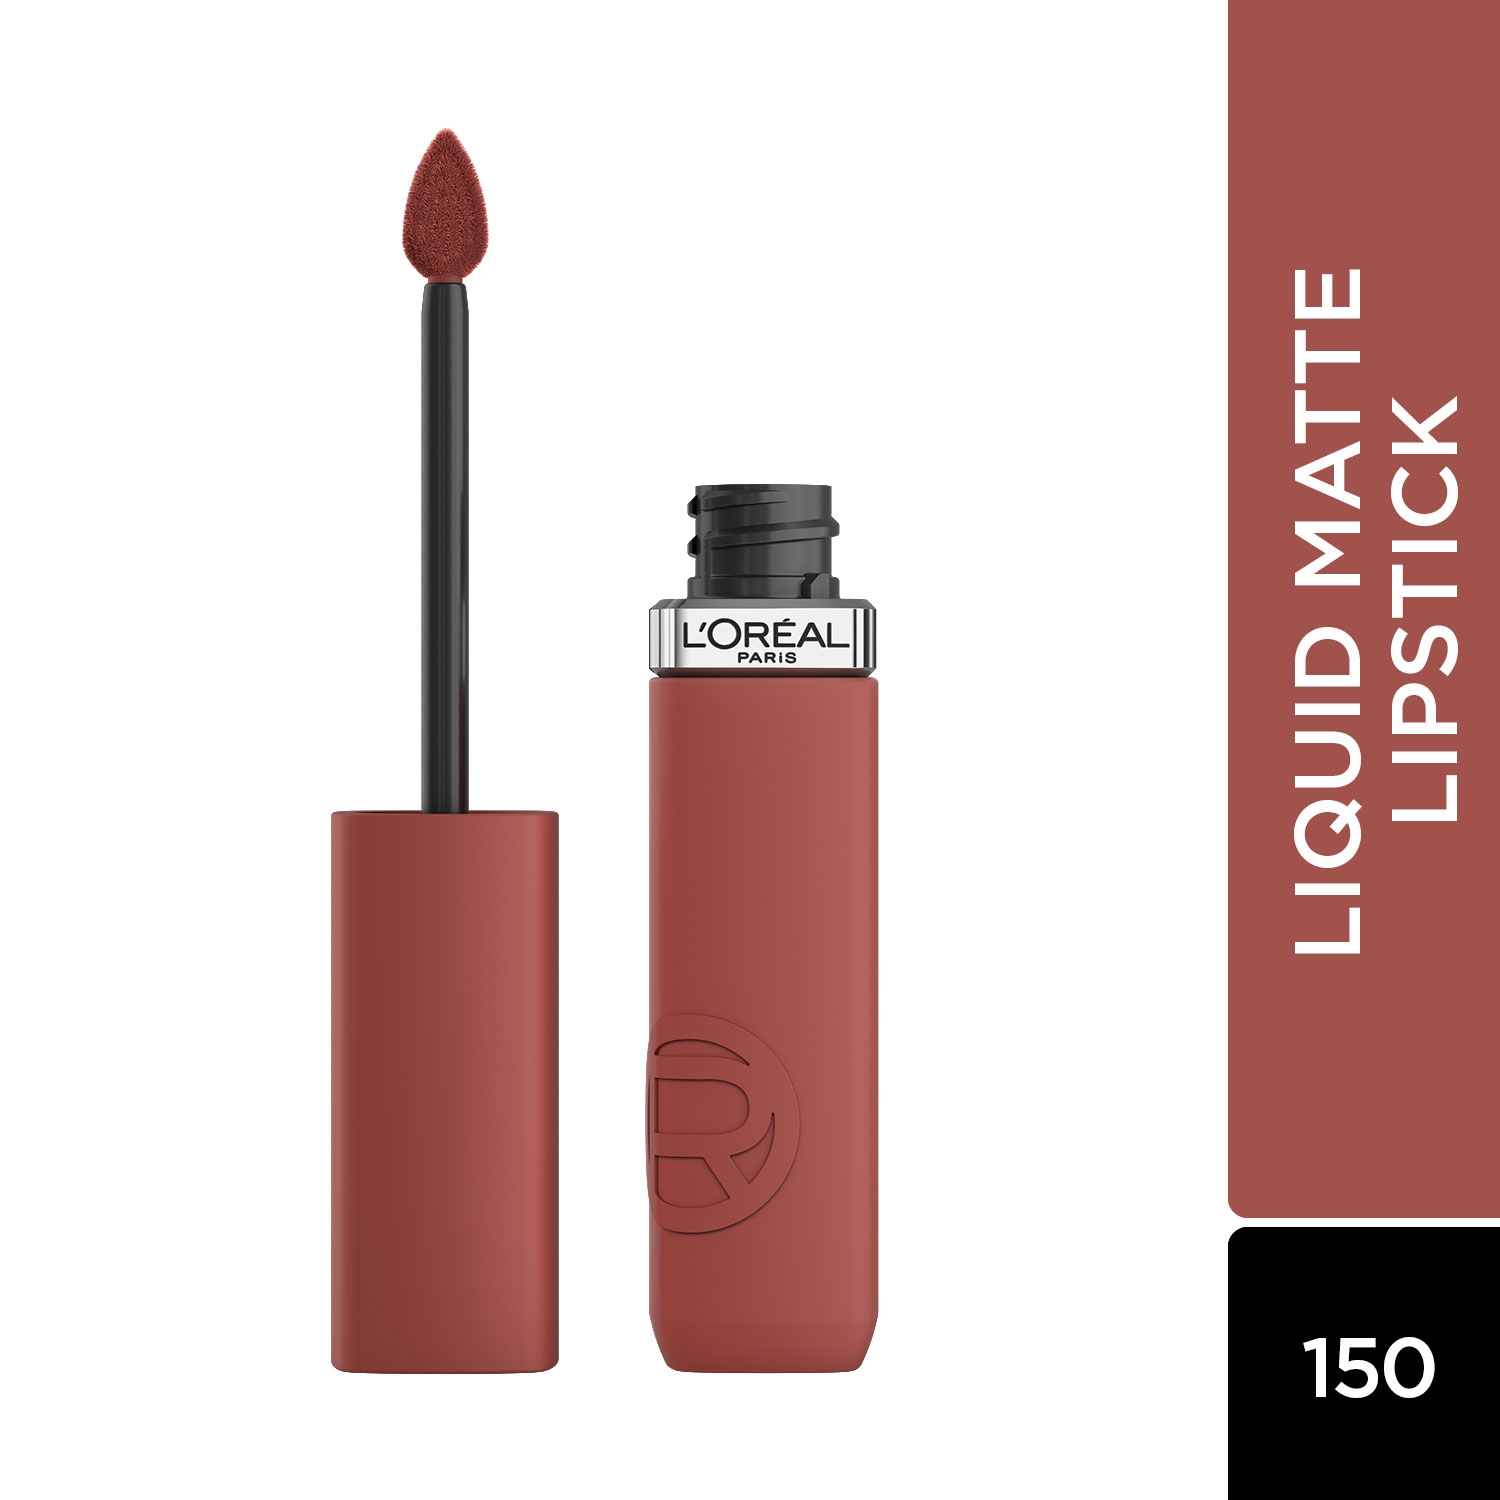 L'Oreal Paris | L'Oreal Paris Infallible Matte Resistance Liquid Lipstick - 150 Lazy Sunday (5ml)